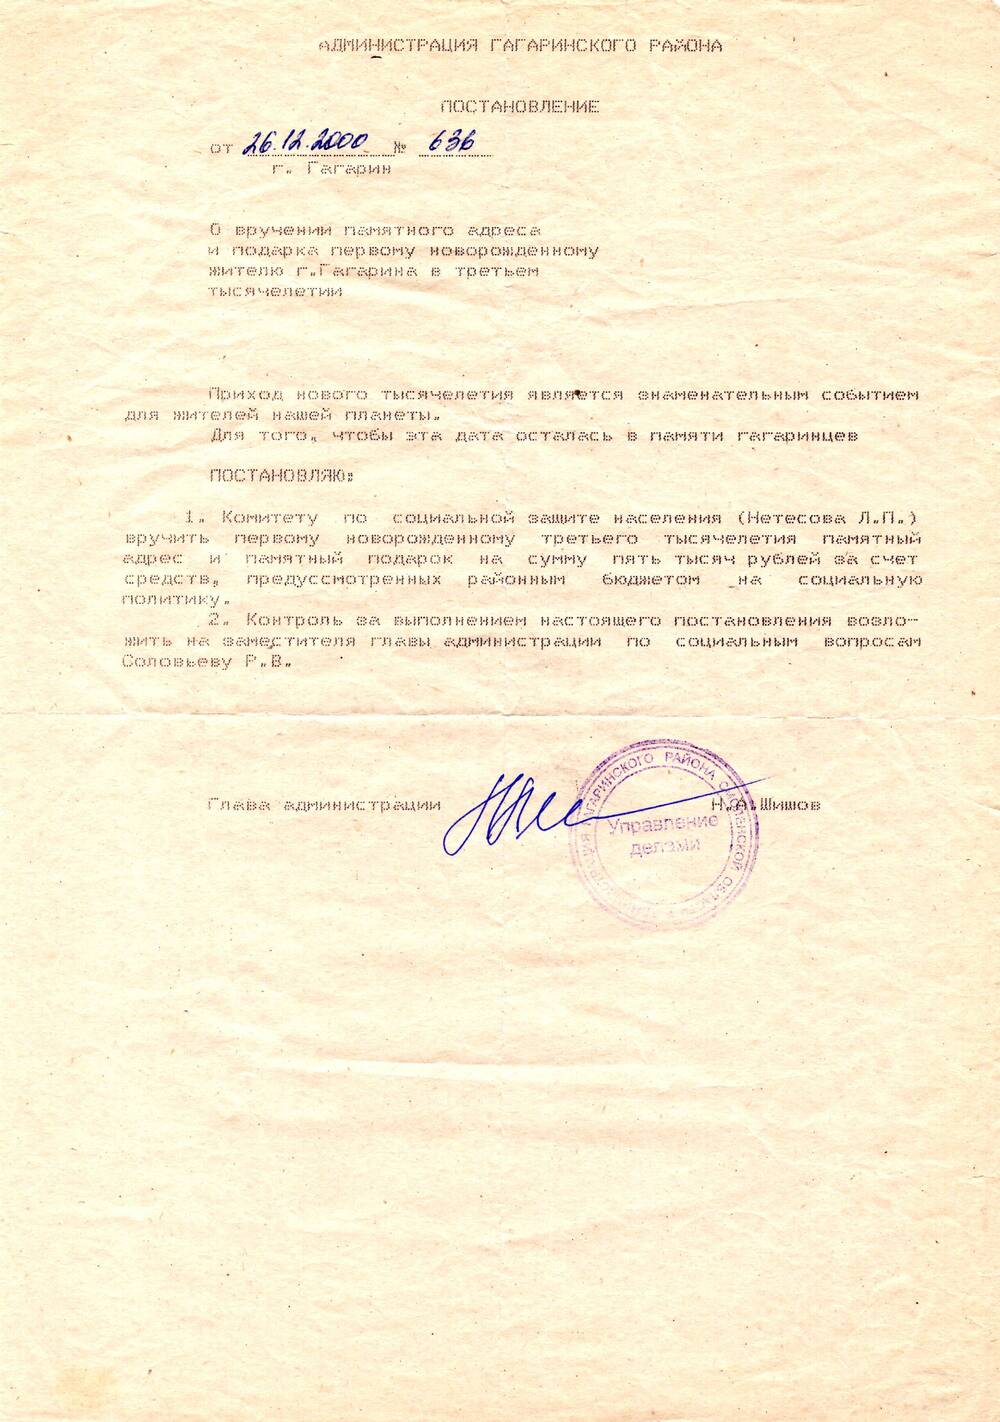 Постановление № 636 о вручении Памятного адреса и подарка первому новорожденному жителю 
г. Гагарина в третьем тысячелетии, вынесенное Администрацией Гагаринского района.